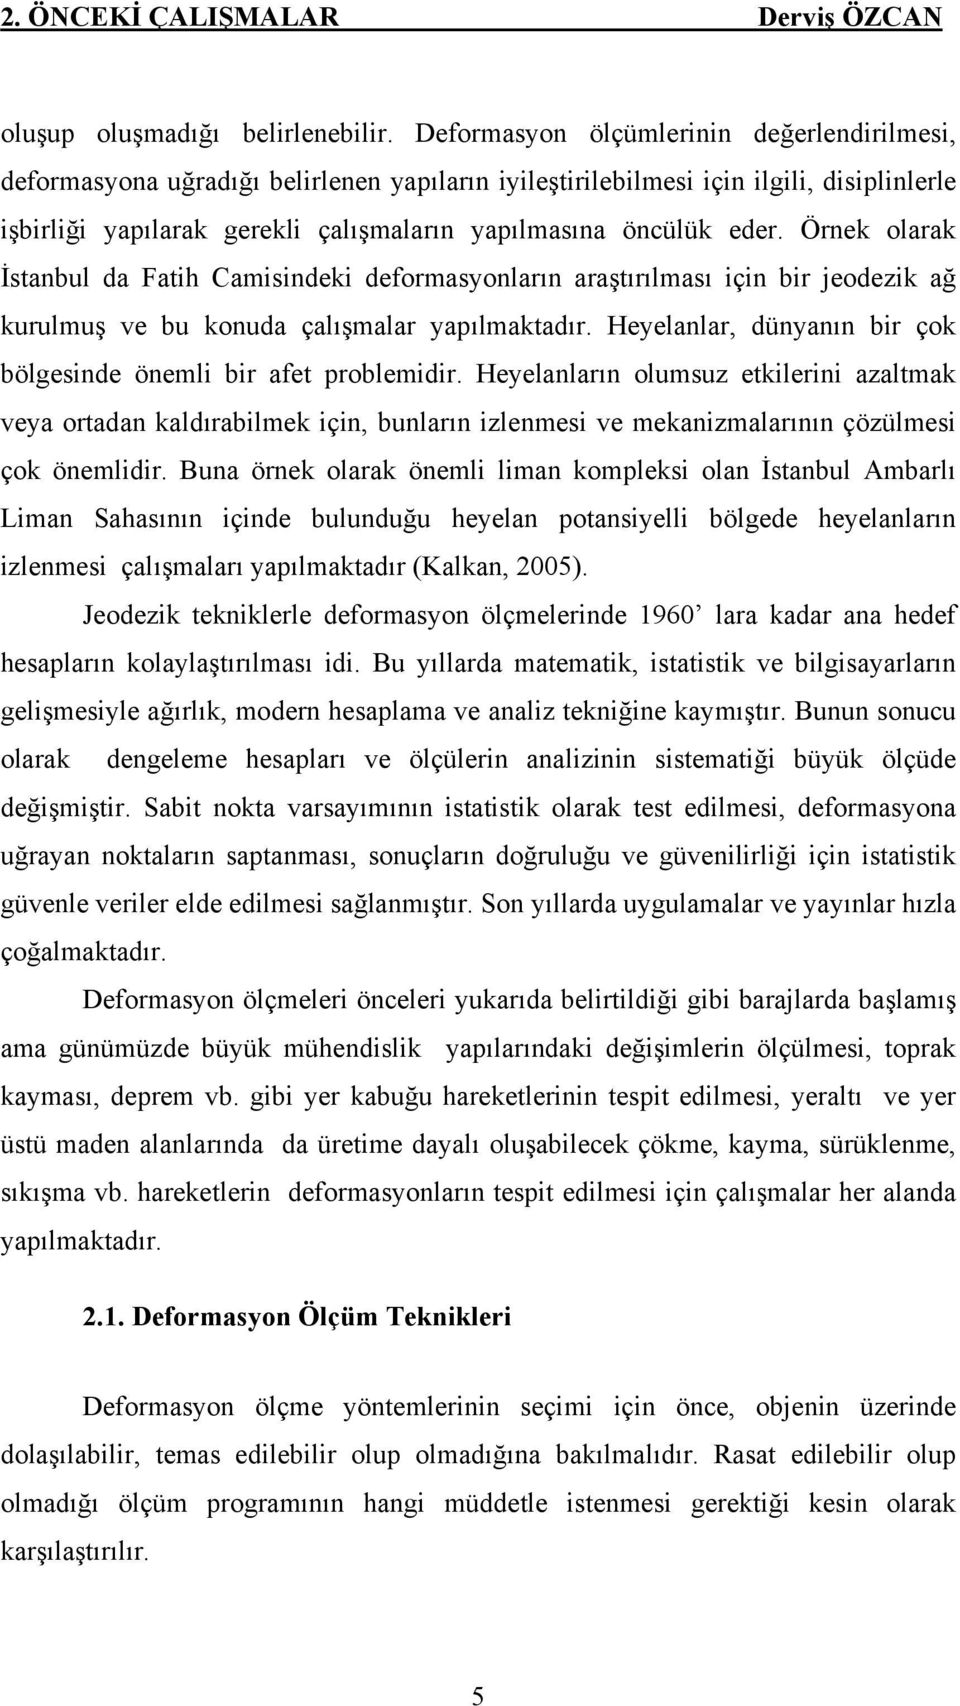 Örnek olarak İstanbul da Fatih Camisindeki deformasyonların araştırılması için bir jeodezik ağ kurulmuş ve bu konuda çalışmalar yapılmaktadır.